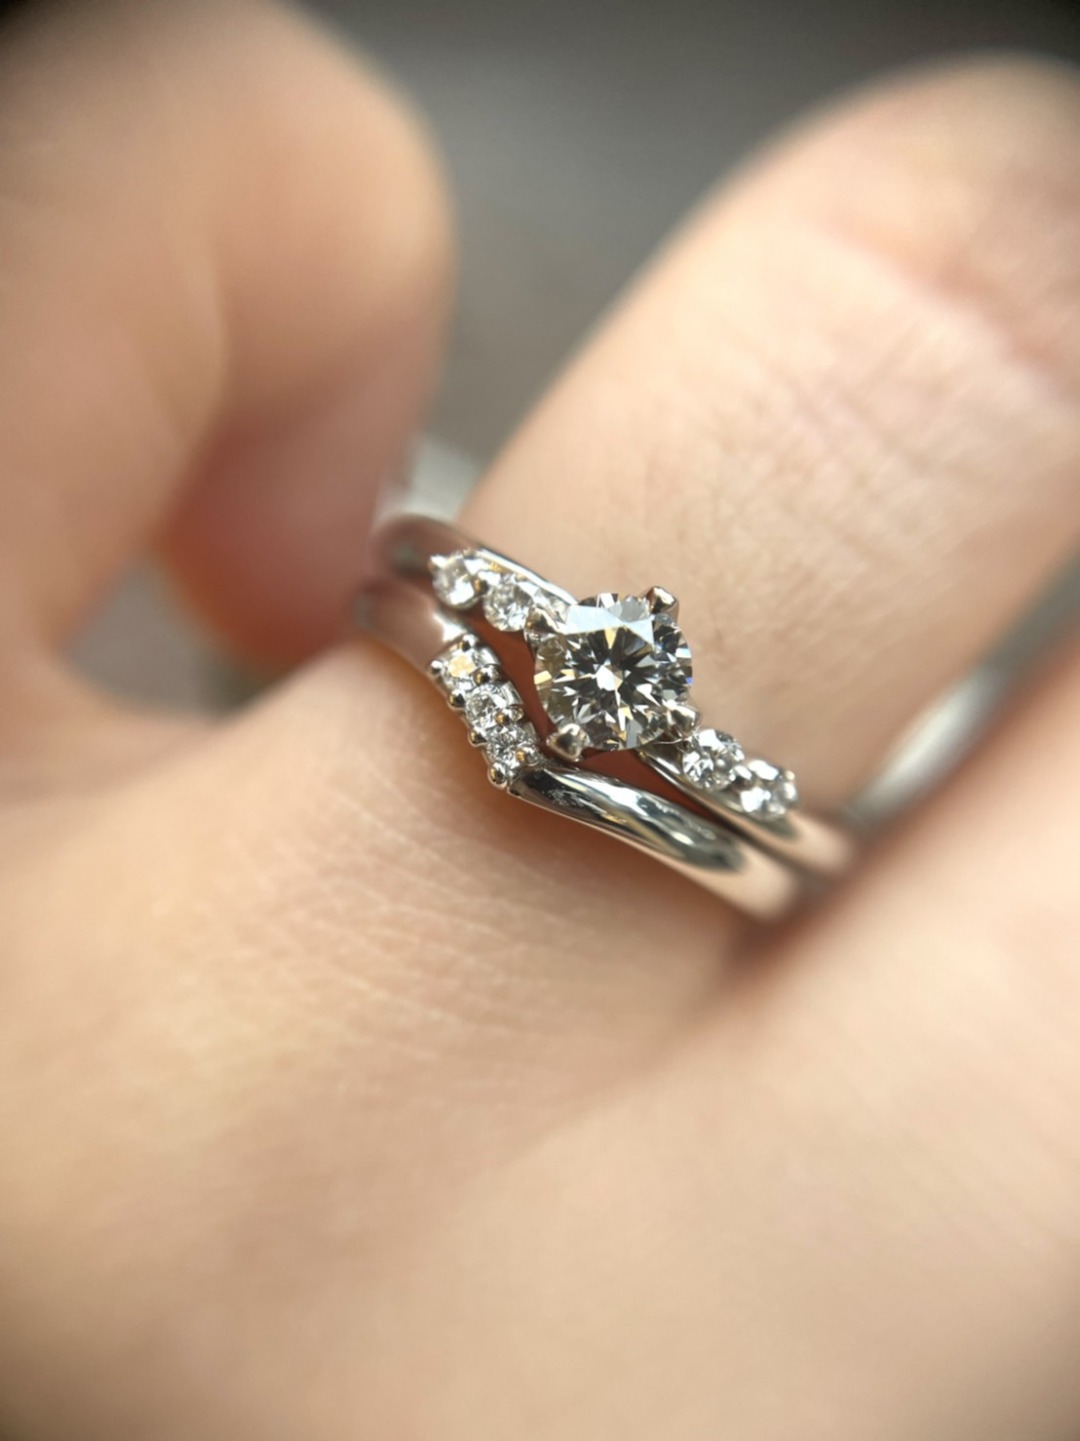 ウェーブデザインの婚約指輪スピカとV字ラインの結婚指輪イヤーがカワイイ重ね付け